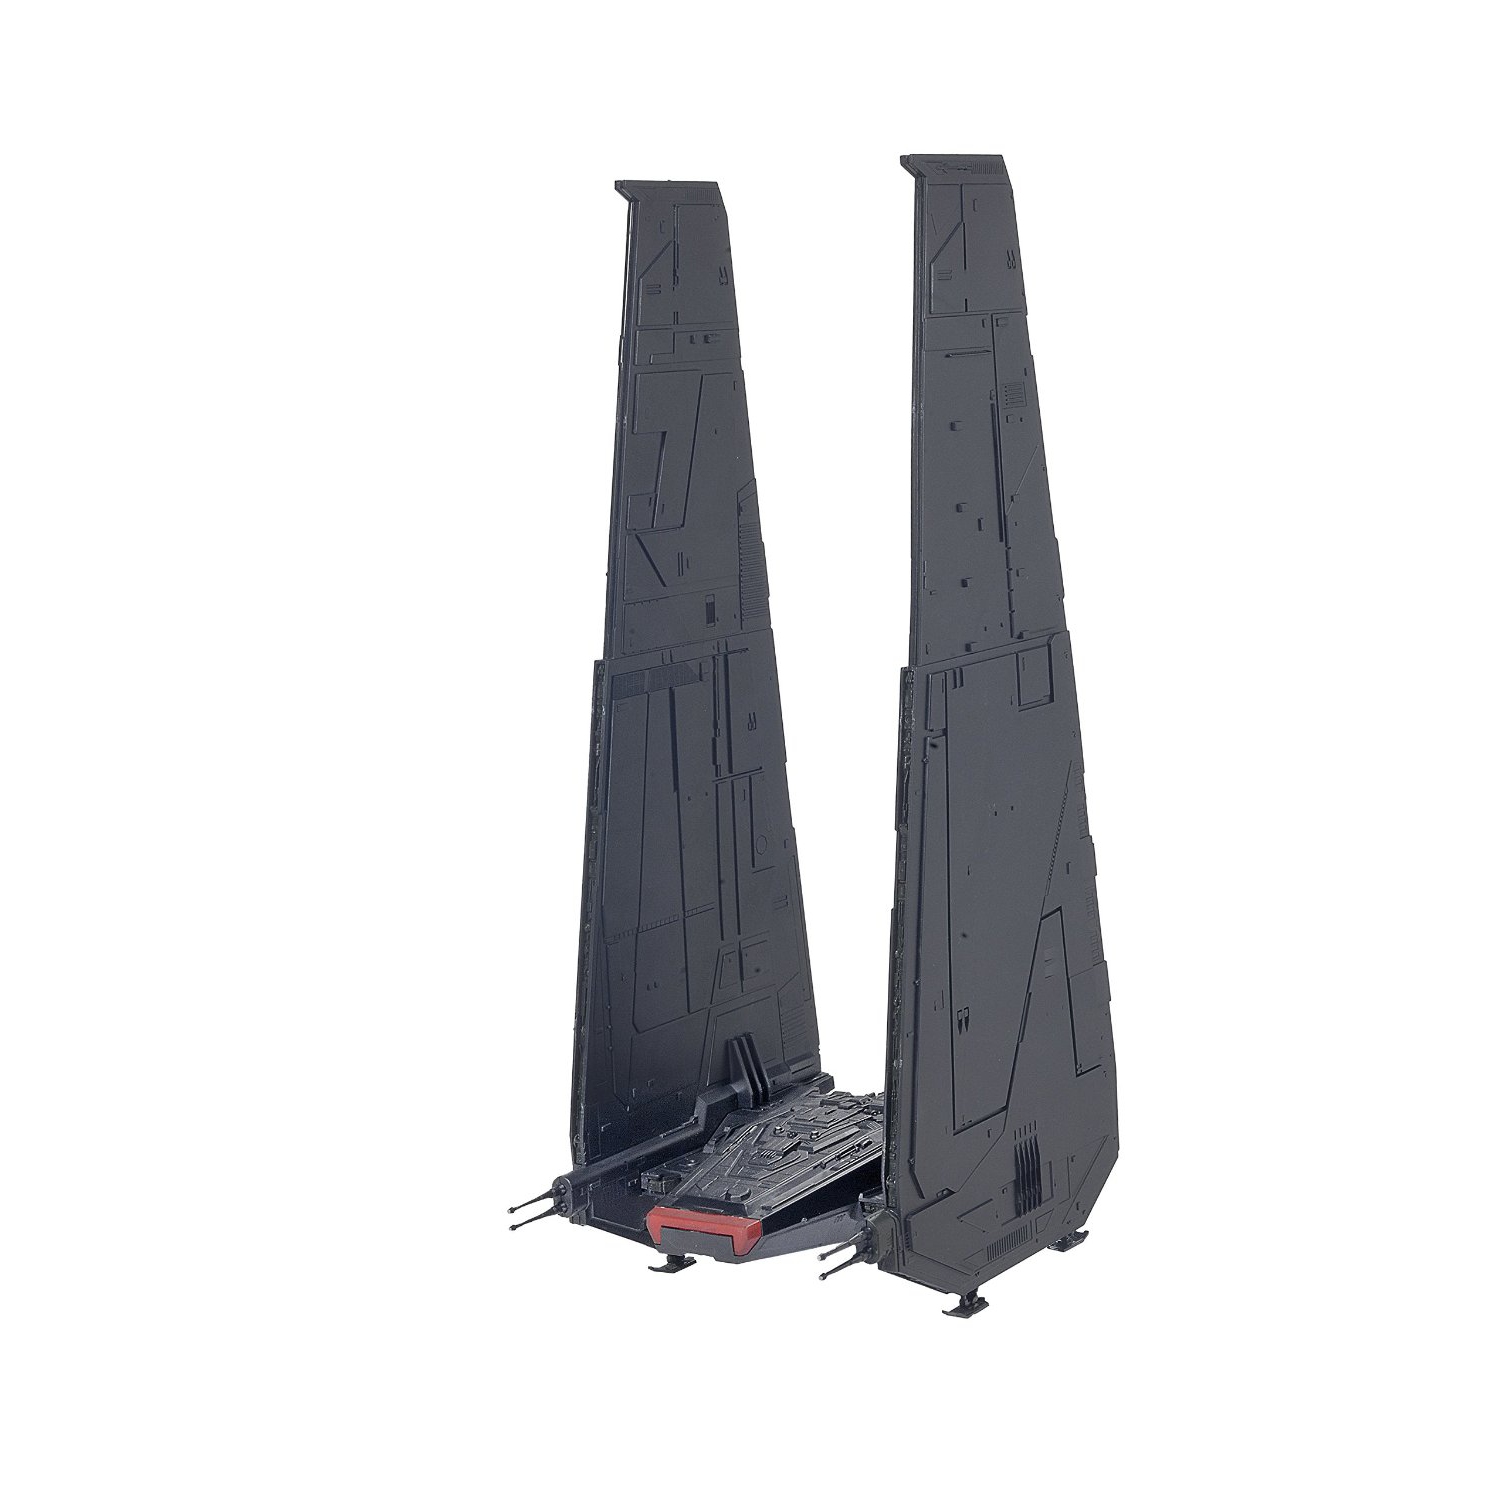 Revell USA Star Wars Model Kit: Kylo Ren's Command Shuttle The Force Awakens